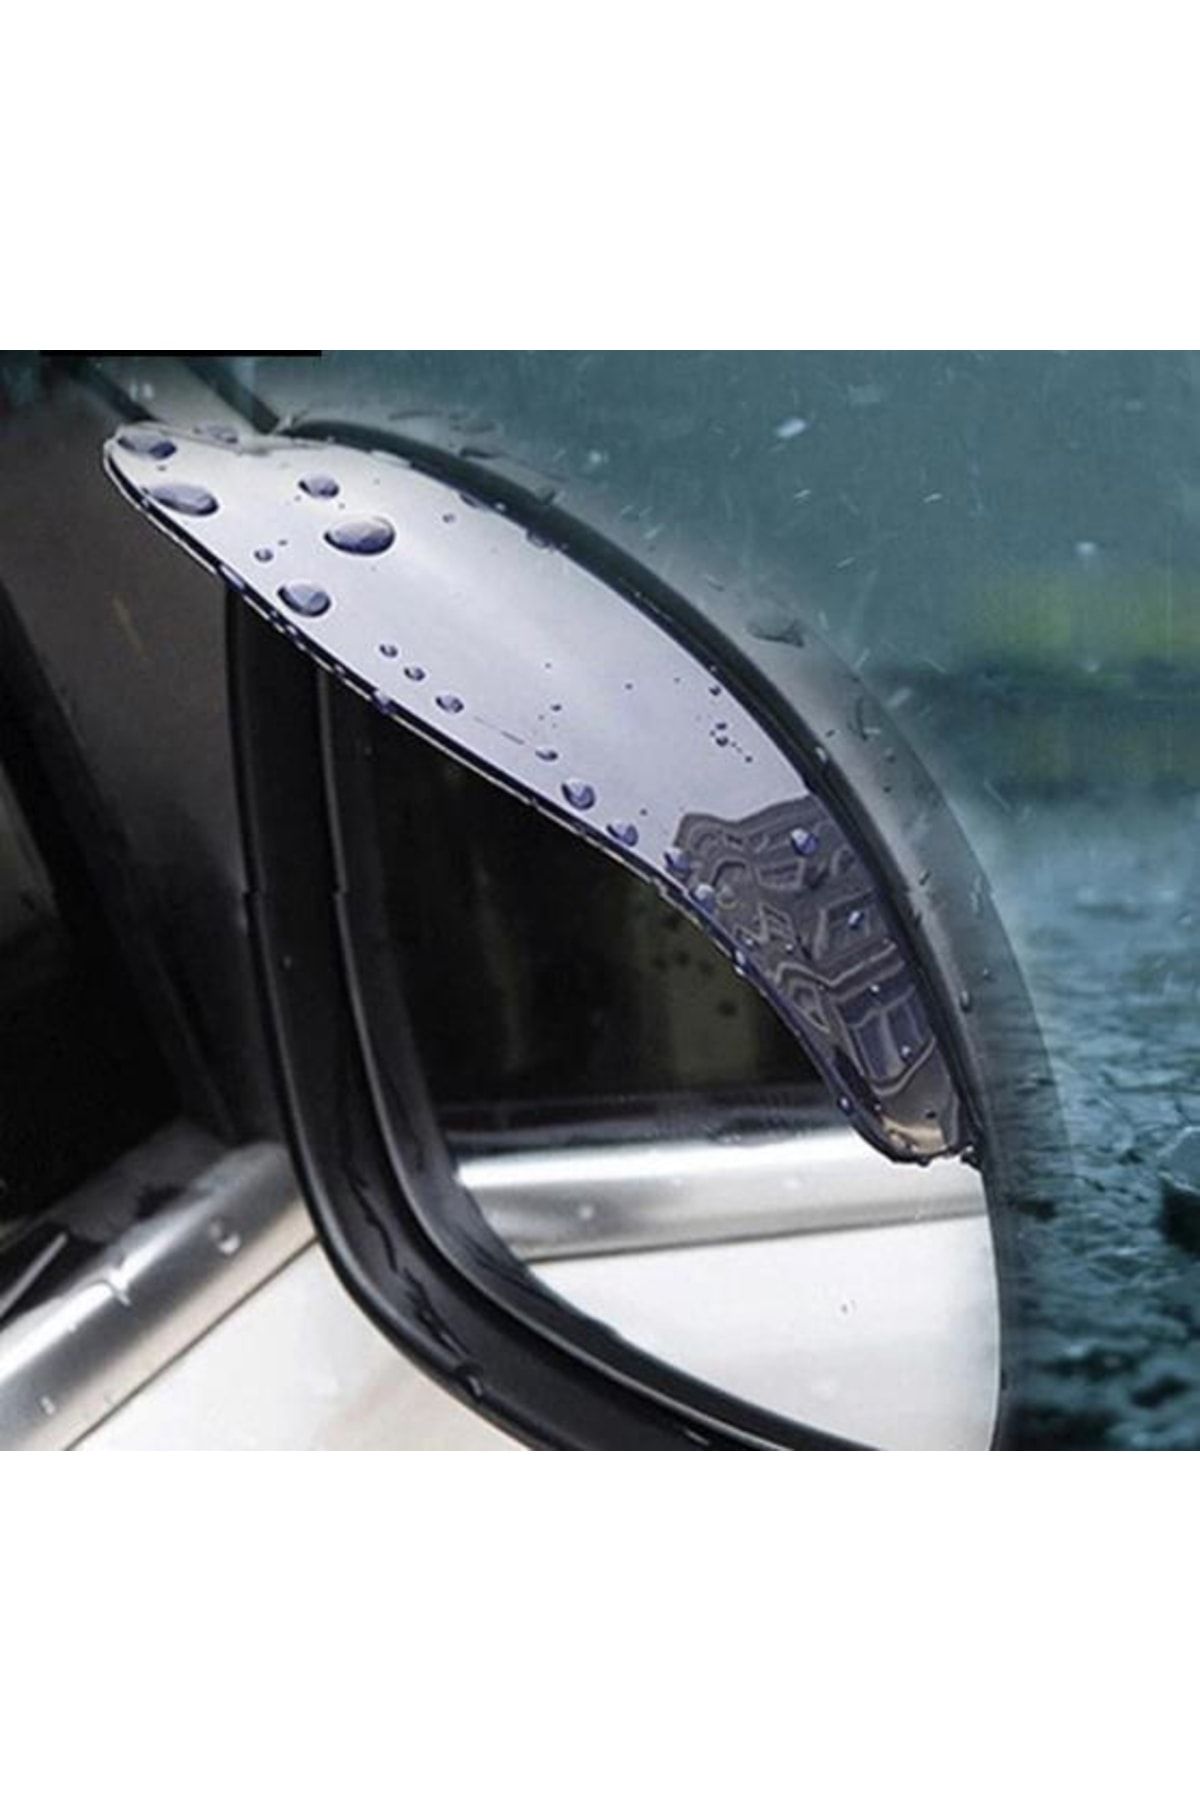 MasterCar Yan Ayna Için Yağmur Engelleyici 422155 Uyumlu